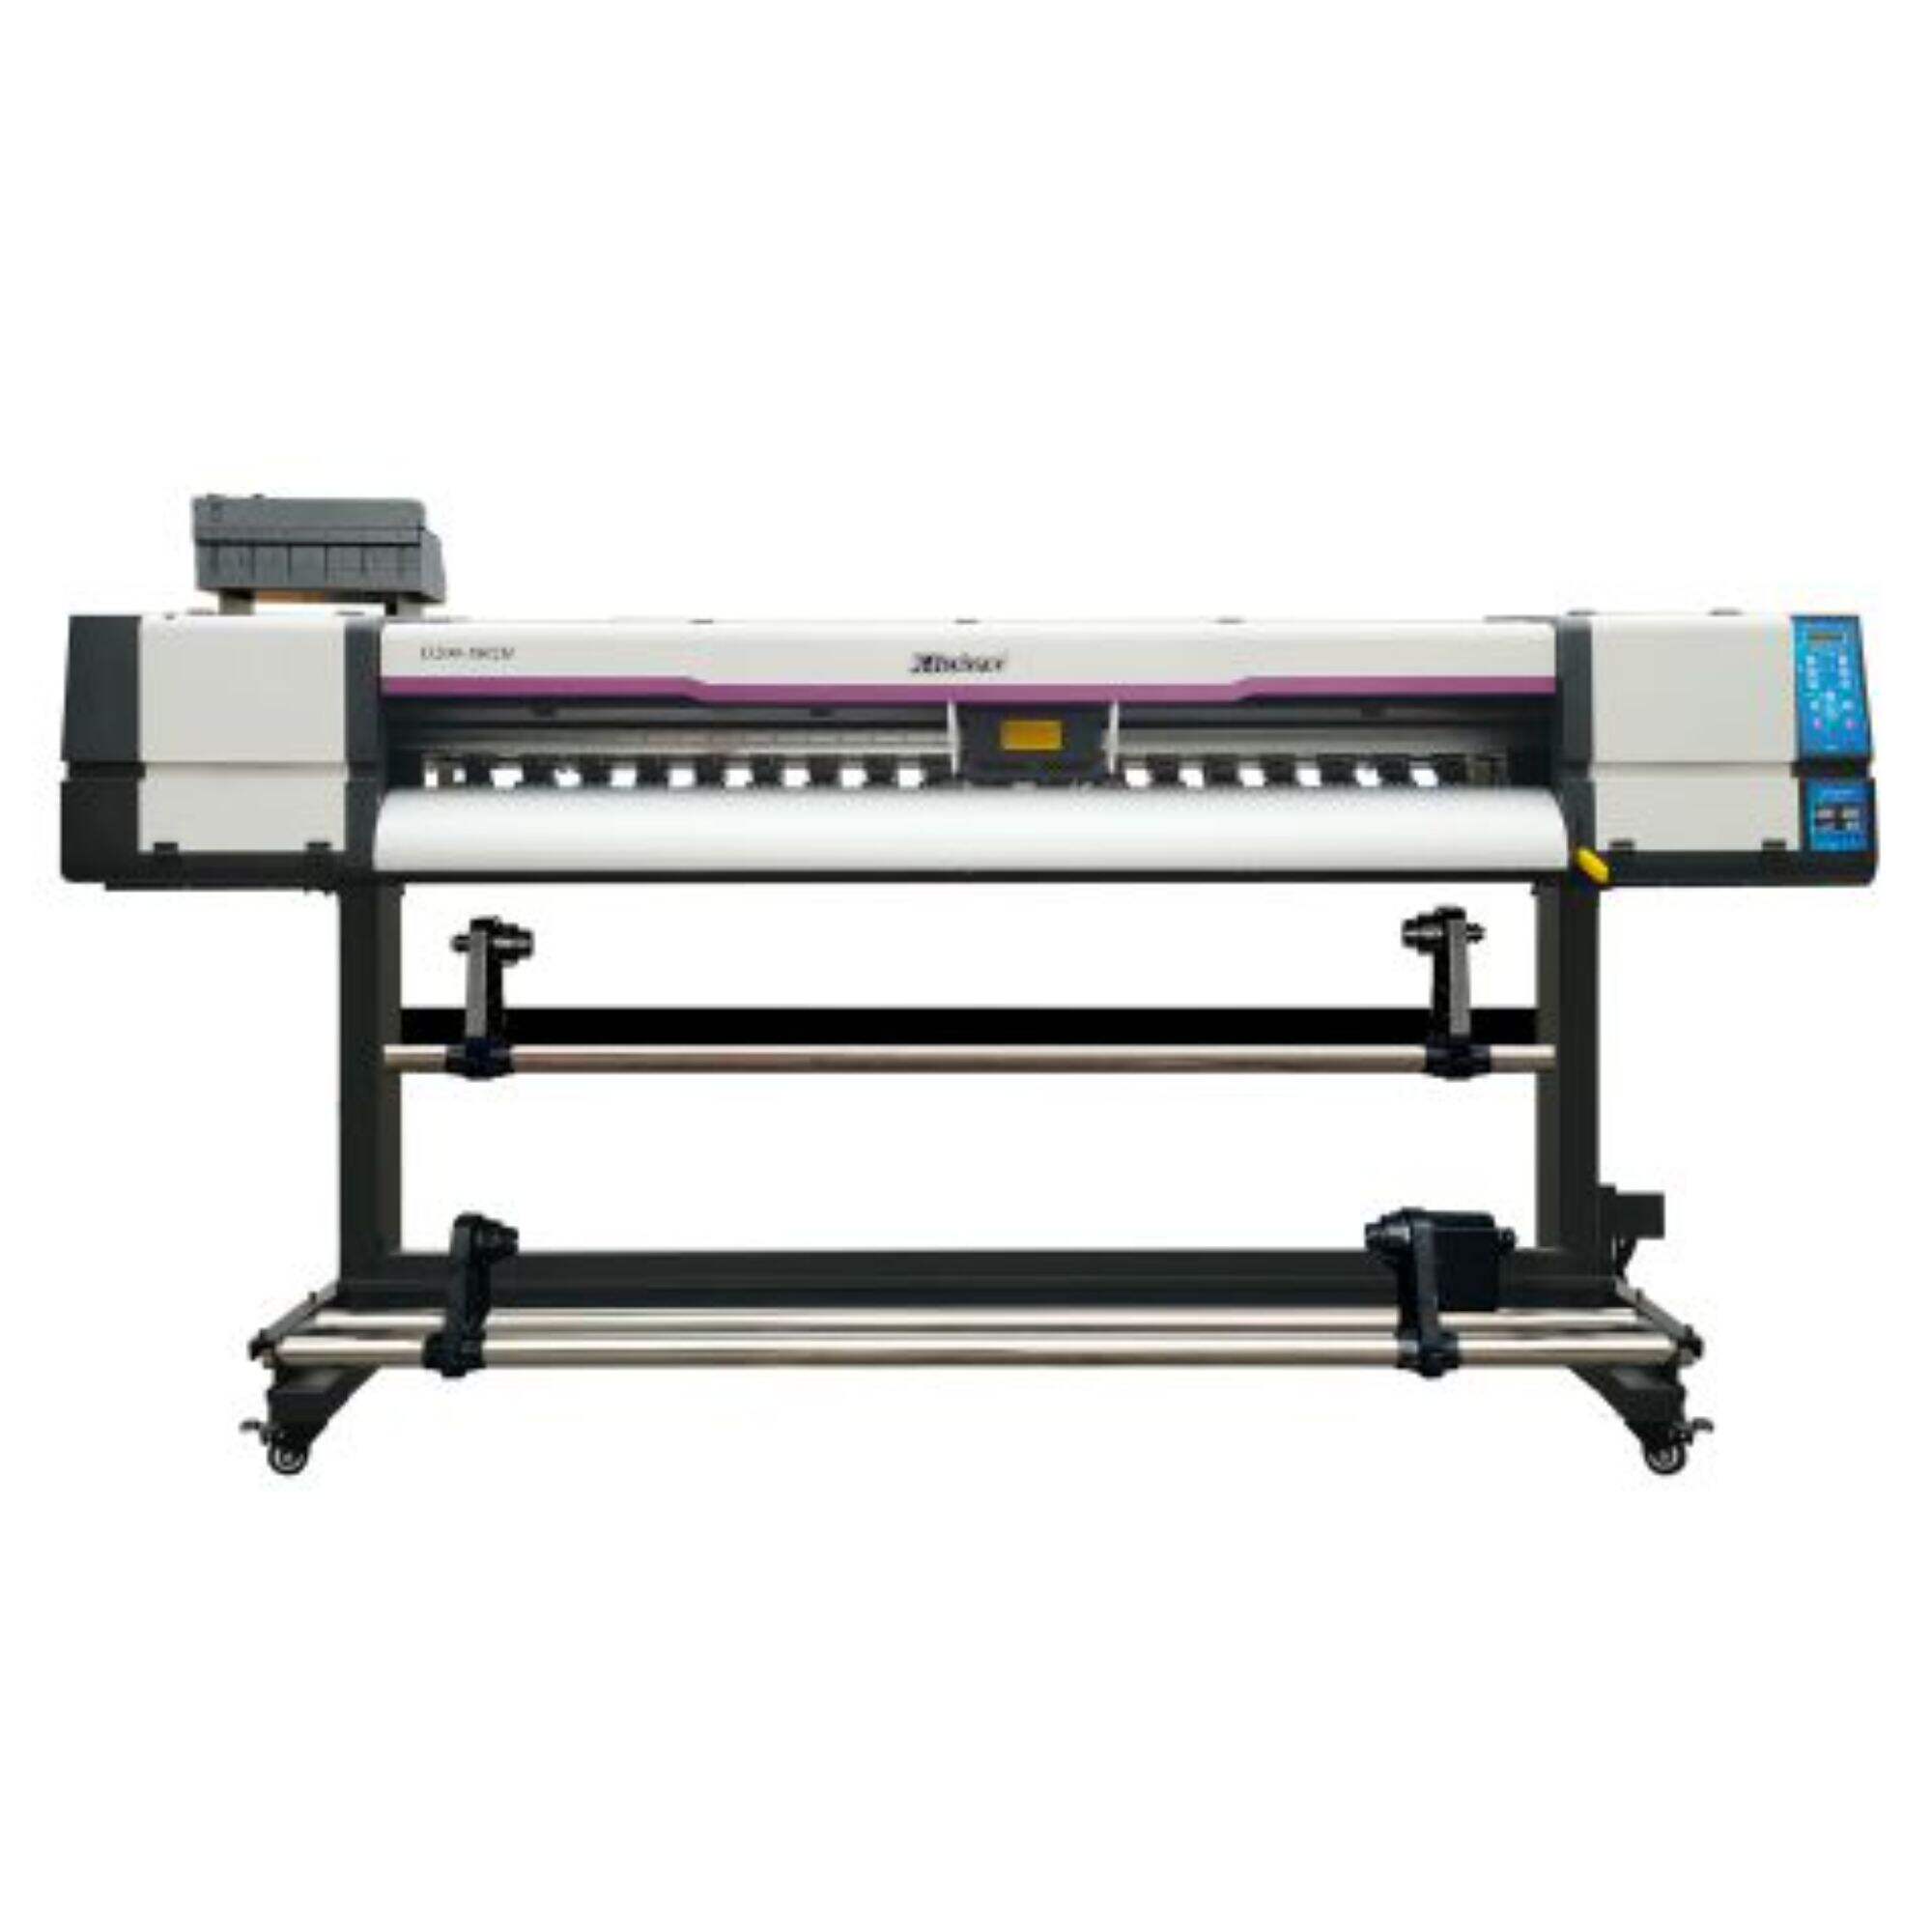 XL-1802H I3200 UV nyomtató